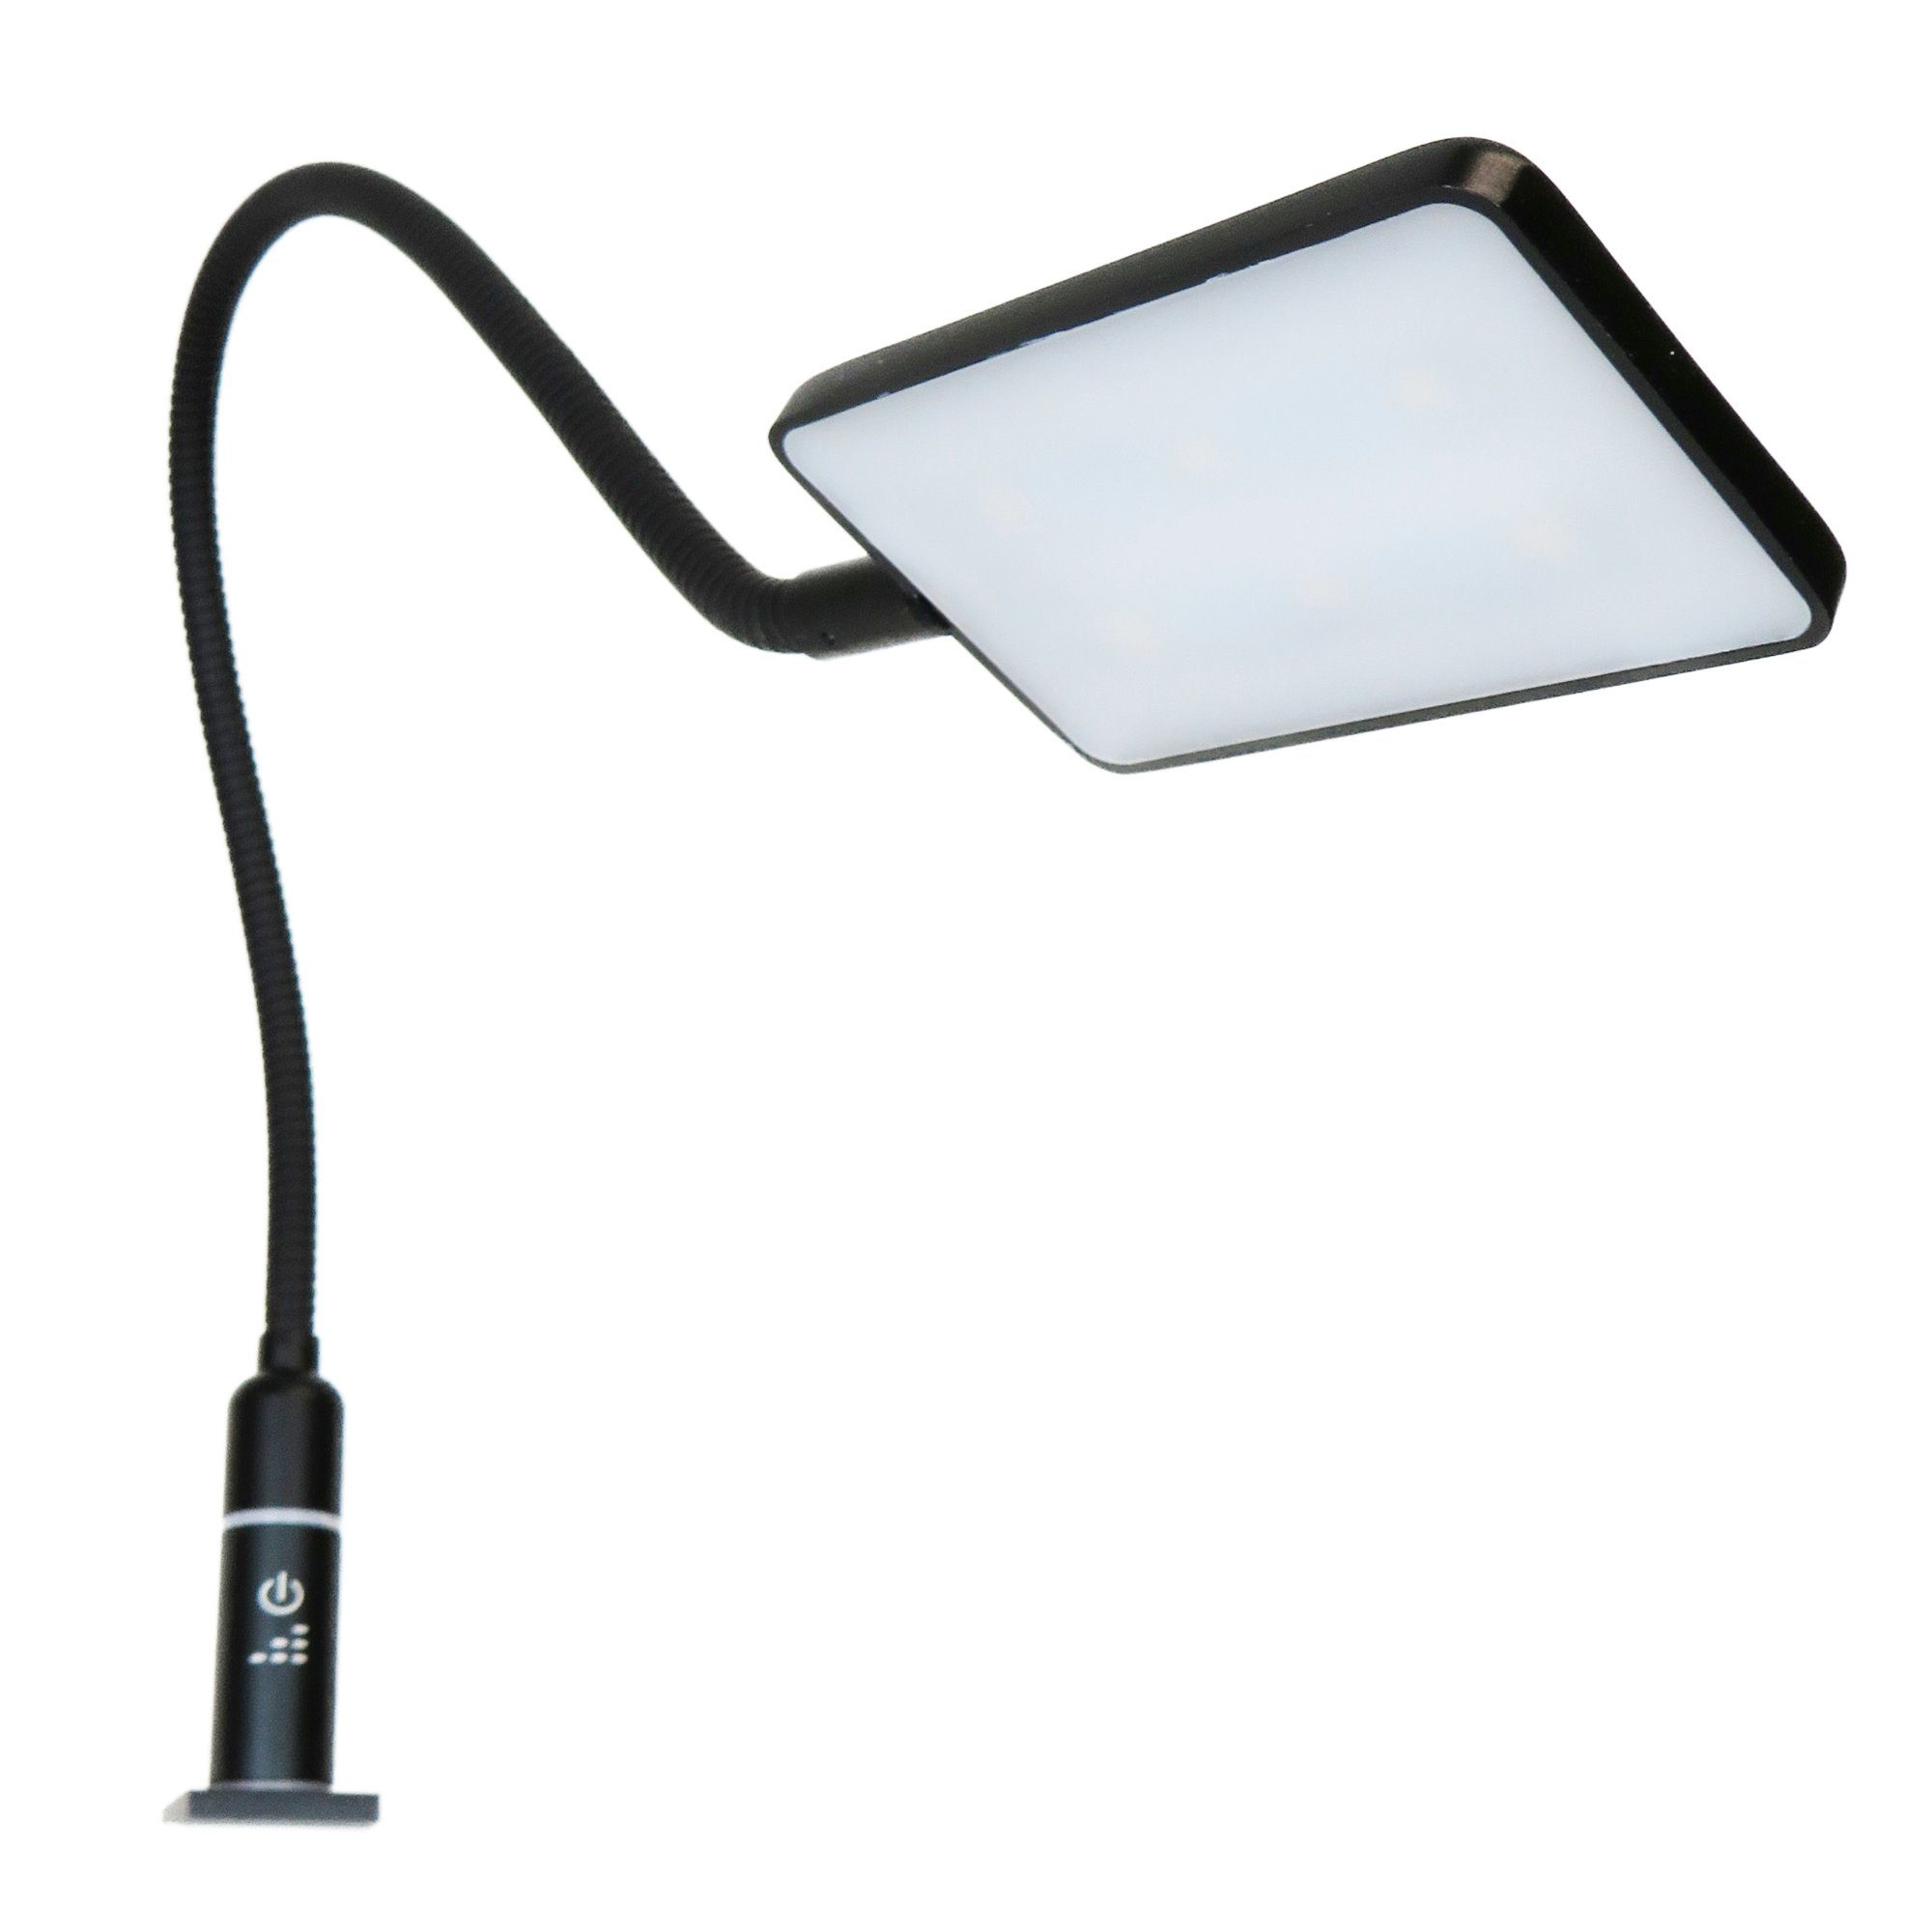 kalb Bettleuchte flexible 4W LED Leseleuchte Nachttischlampe Bettlampe schwarz, 1er Set schwarz, warmweiß